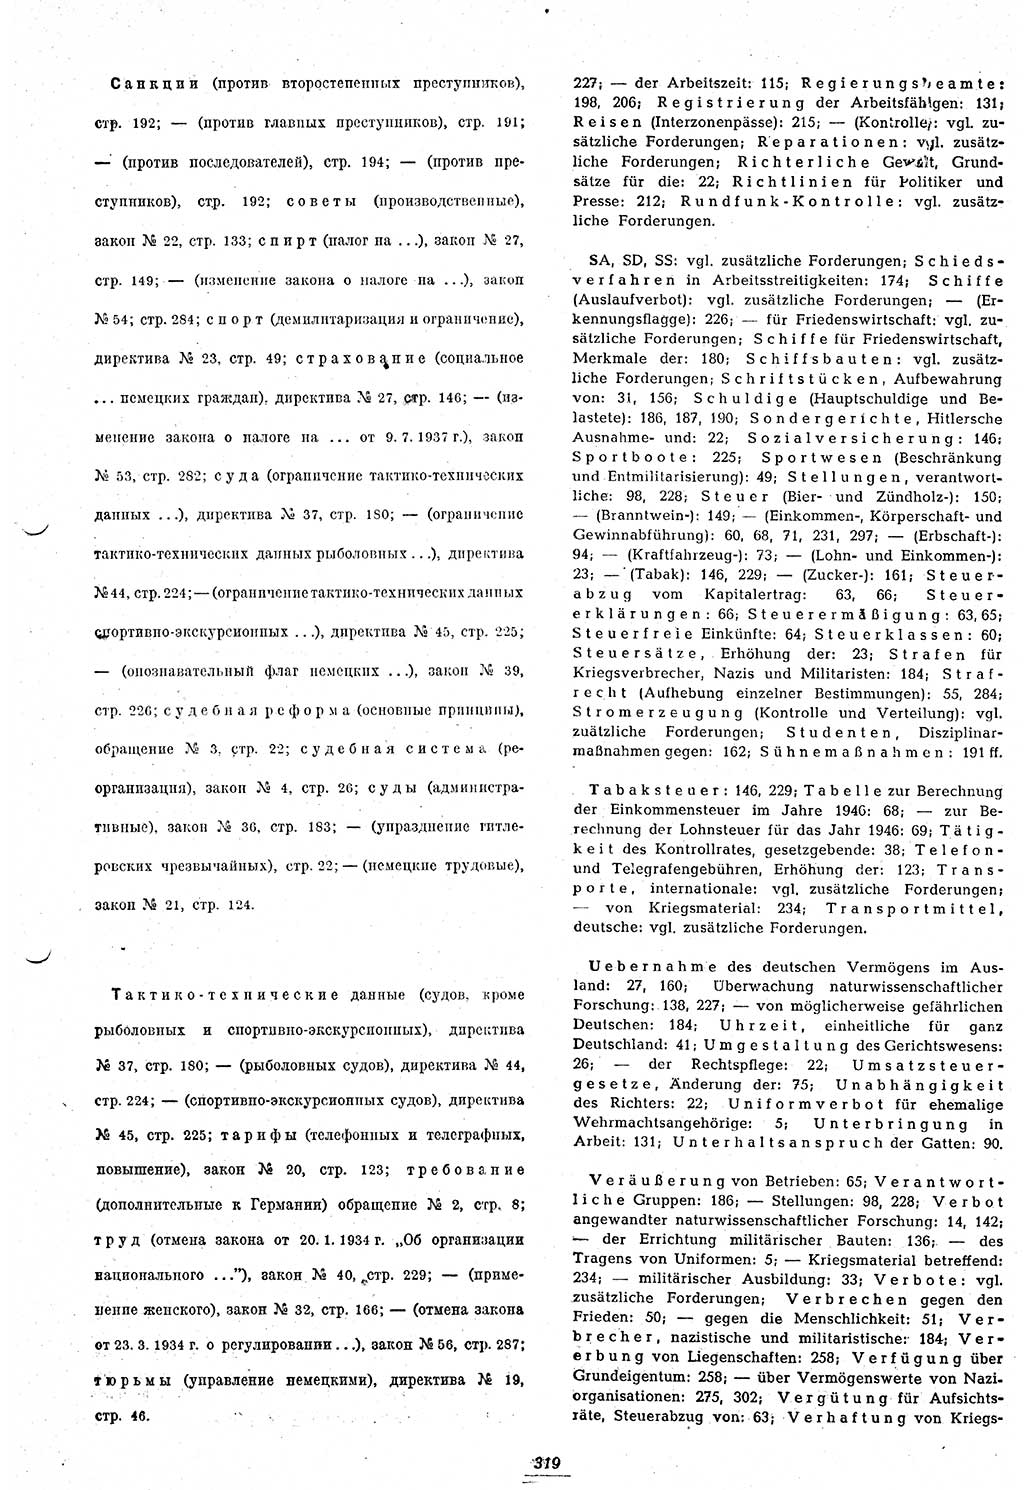 Amtsblatt des Kontrollrats (ABlKR) in Deutschland 1948, Seite 319/2 (ABlKR Dtl. 1948, S. 319/2)